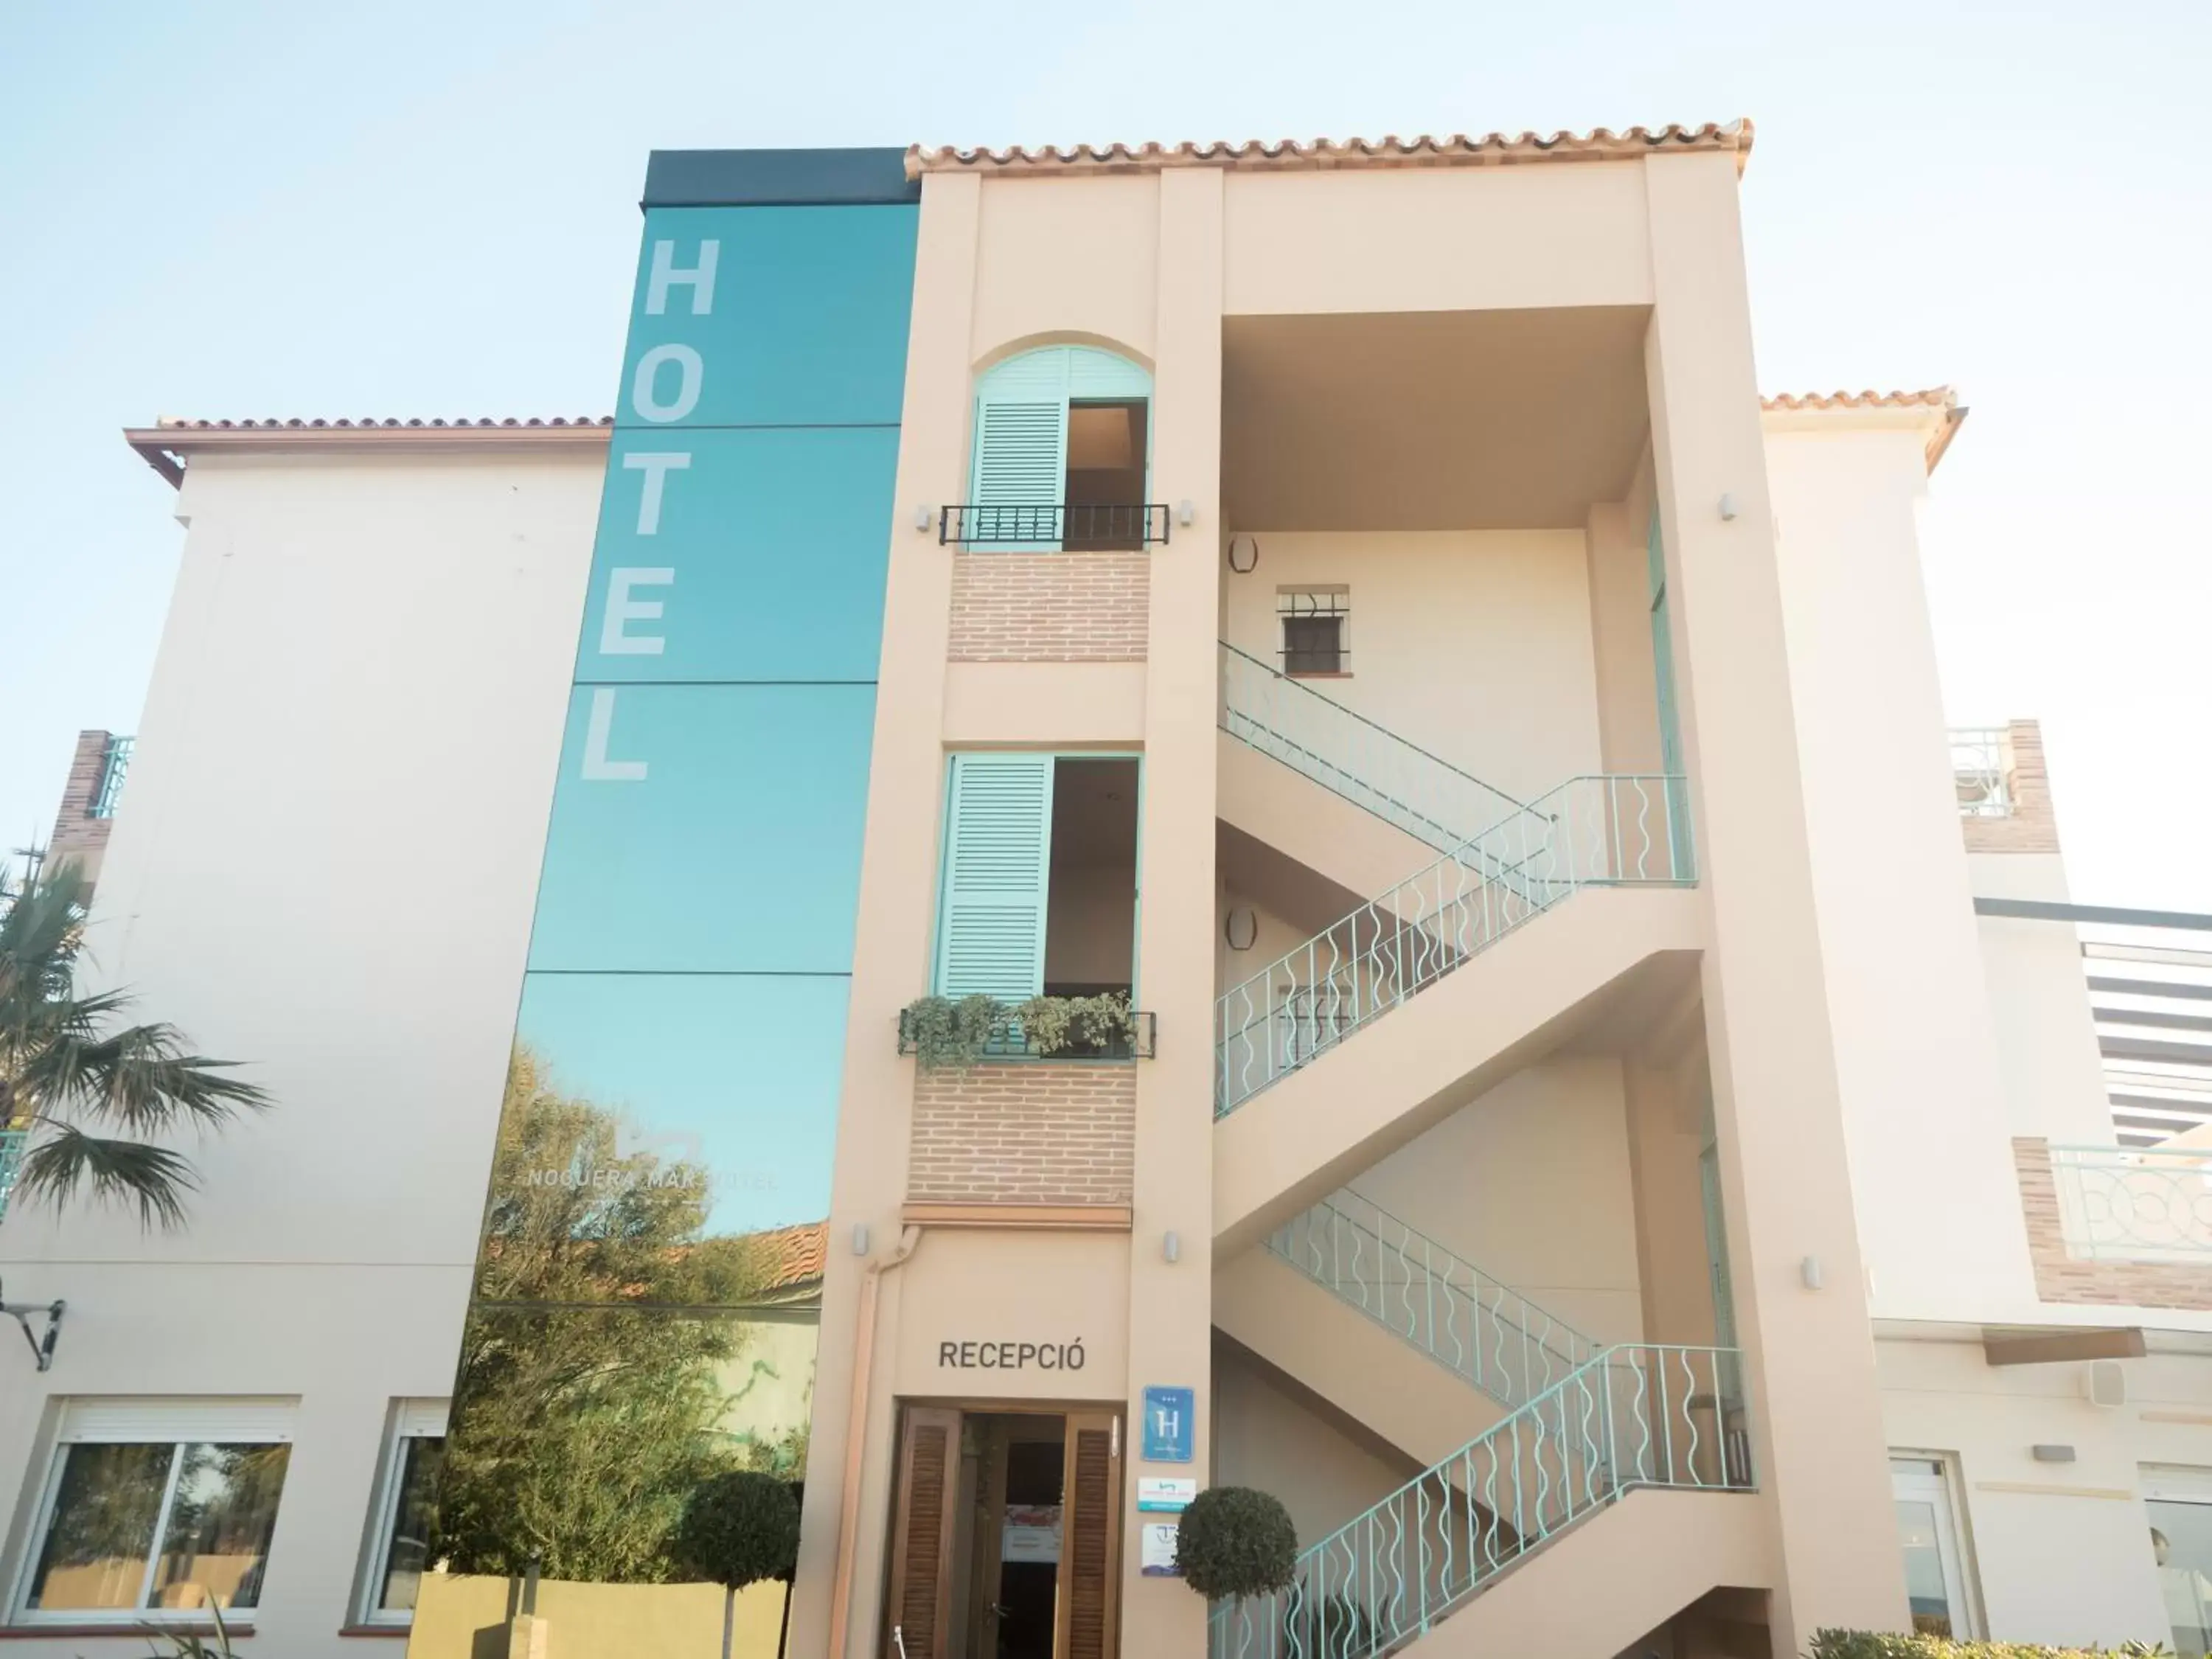 Facade/entrance, Property Building in Hotel Noguera Mar